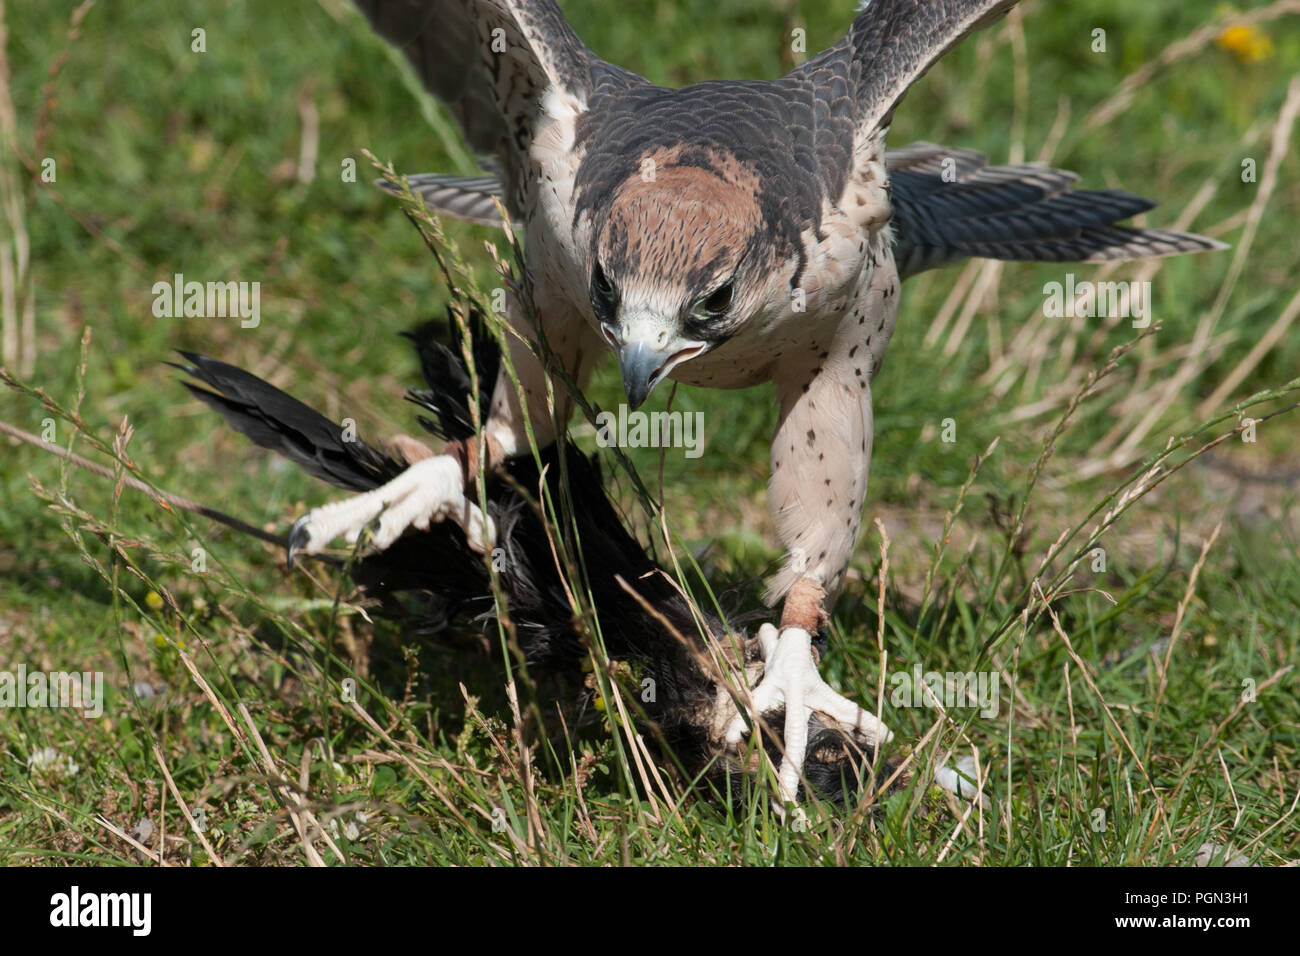 Lagger falcon, Juggerfalk (Falco jugger) Foto Stock